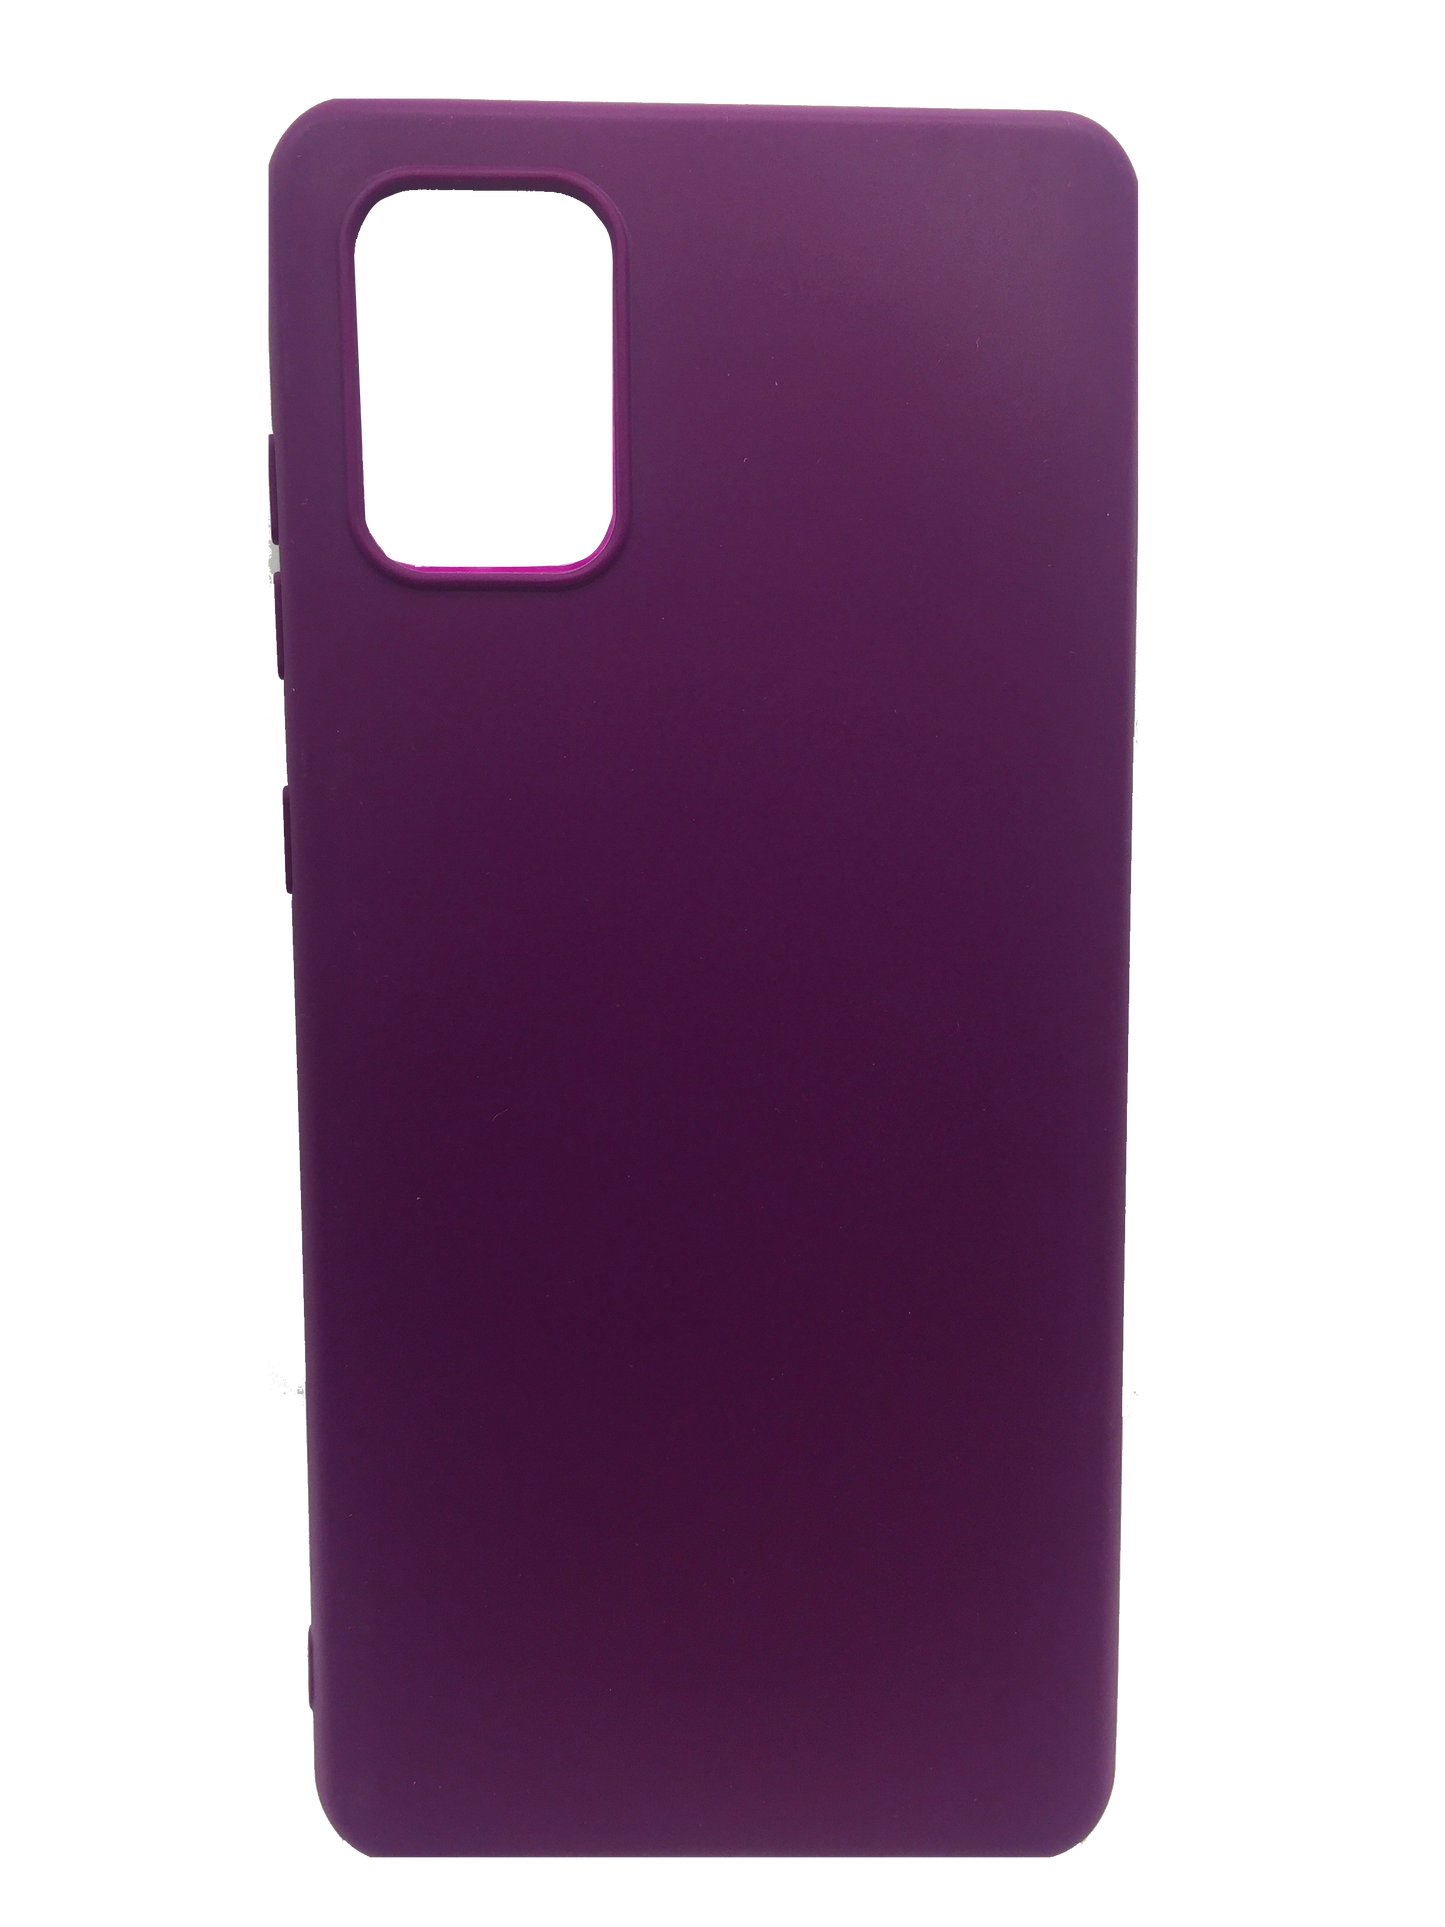 Silicone case Samsung A71 PURPLE